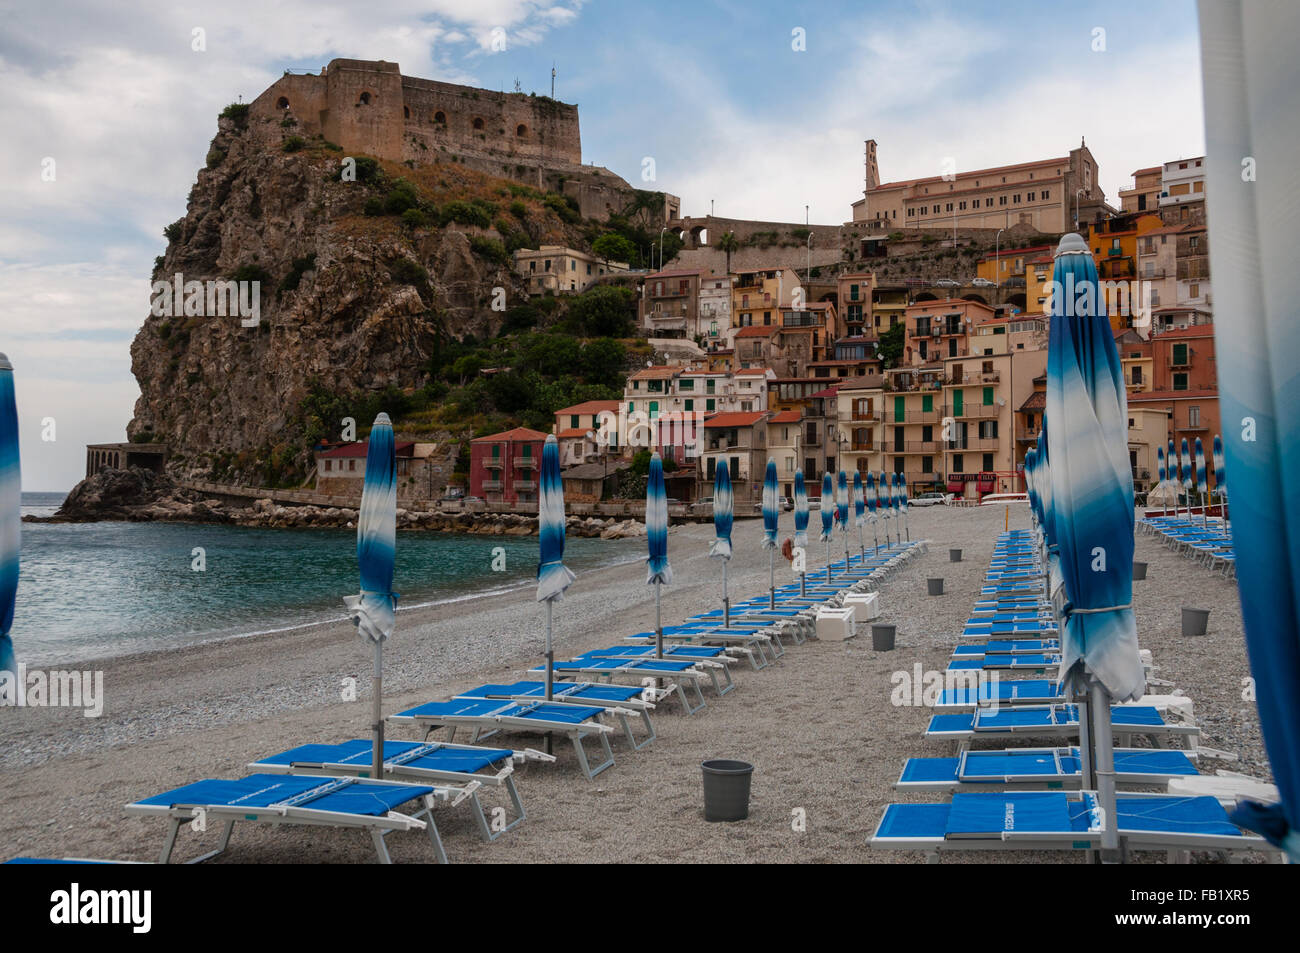 Paraguas y beachchair azul en la playa en frente de la pequeña ciudad italiana sobre un acantilado bajo un cielo azul Foto de stock